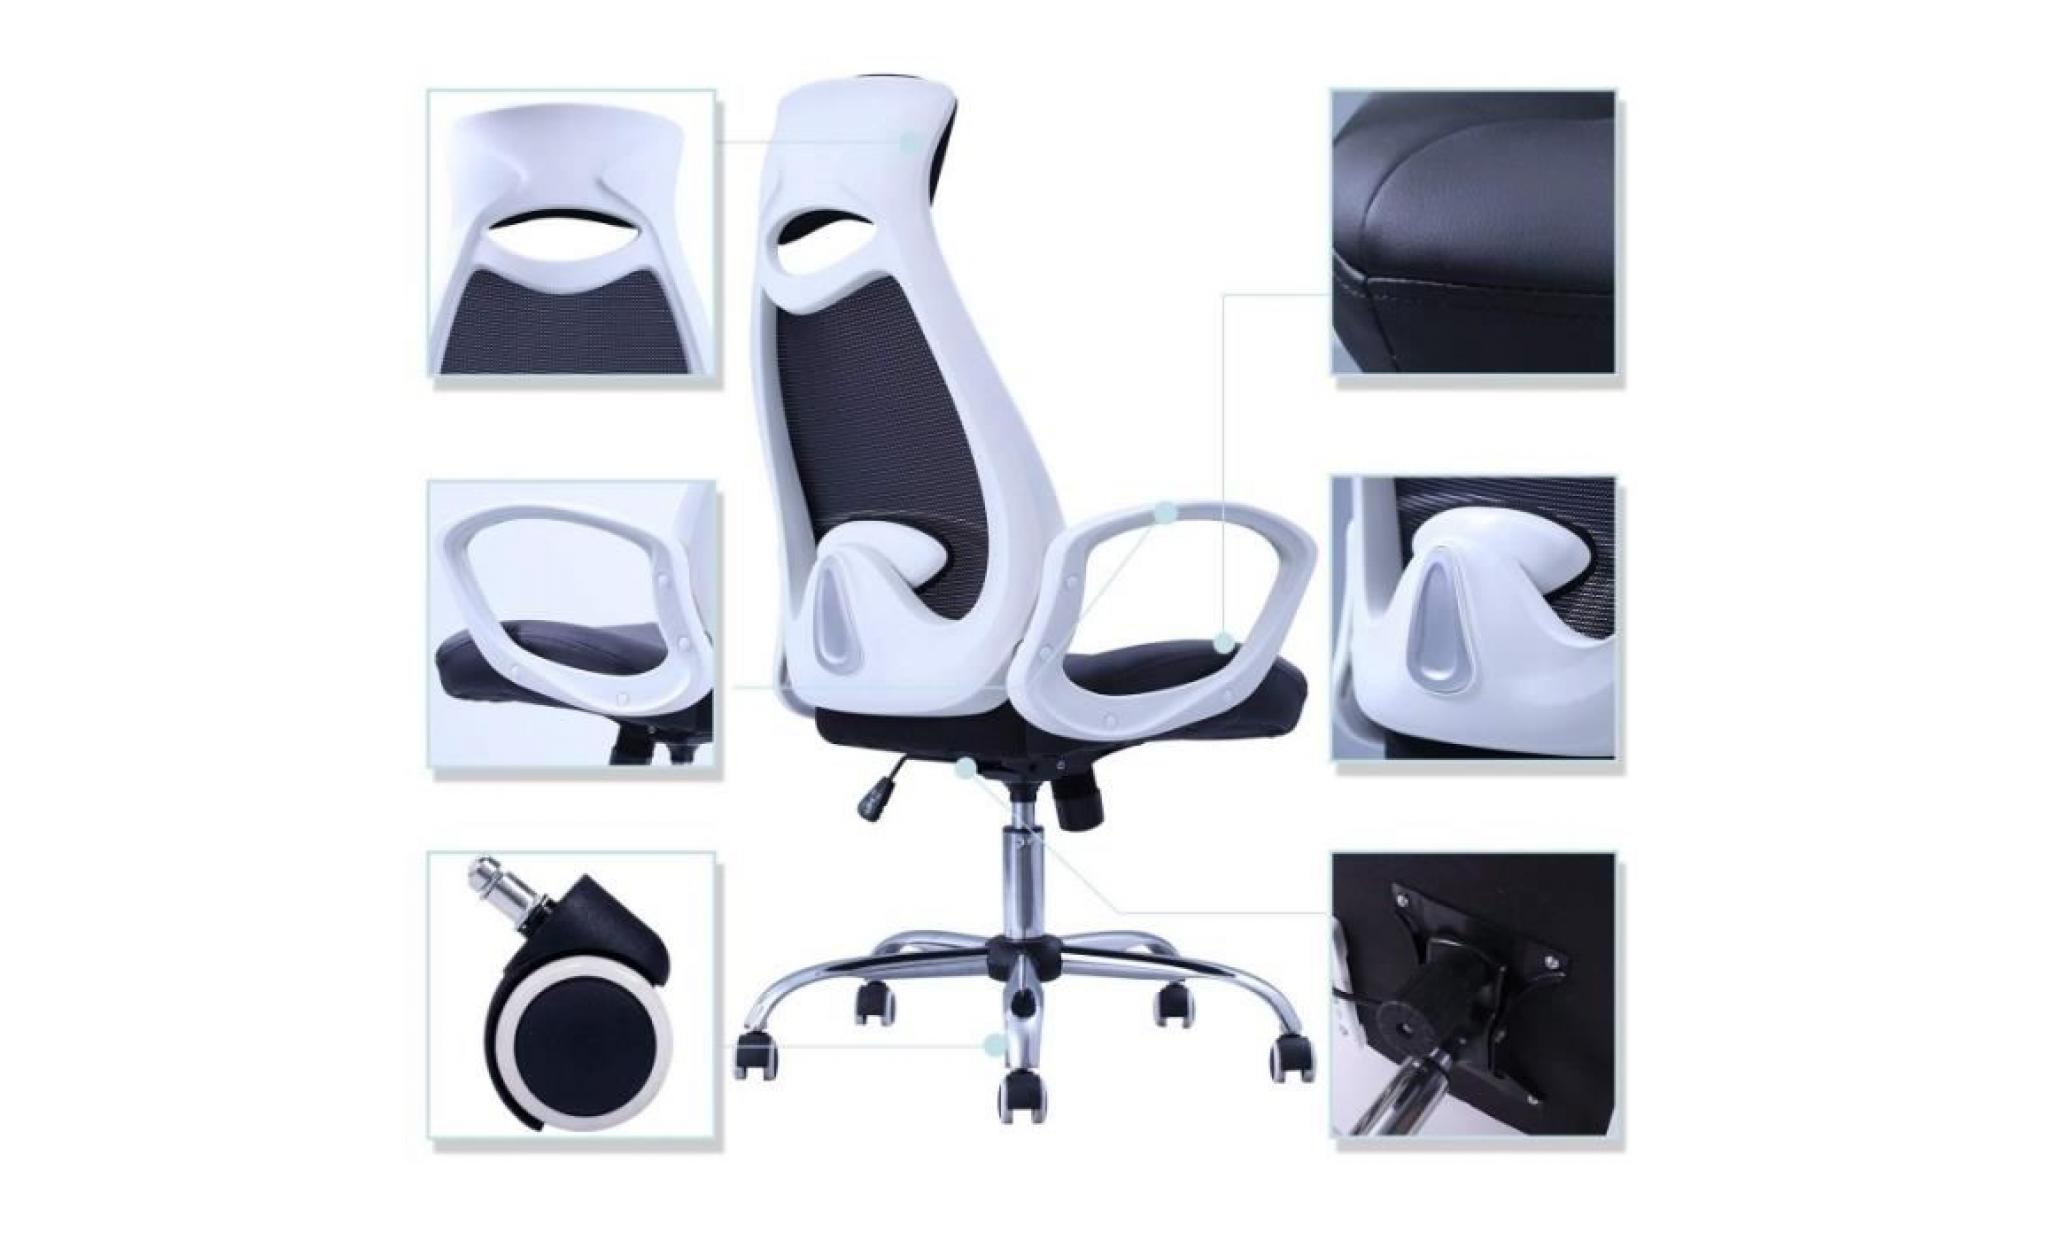 fauteuil de bureau ergonomique en simili cuir et maille noir et accoudoirs blanc bur09063 pas cher